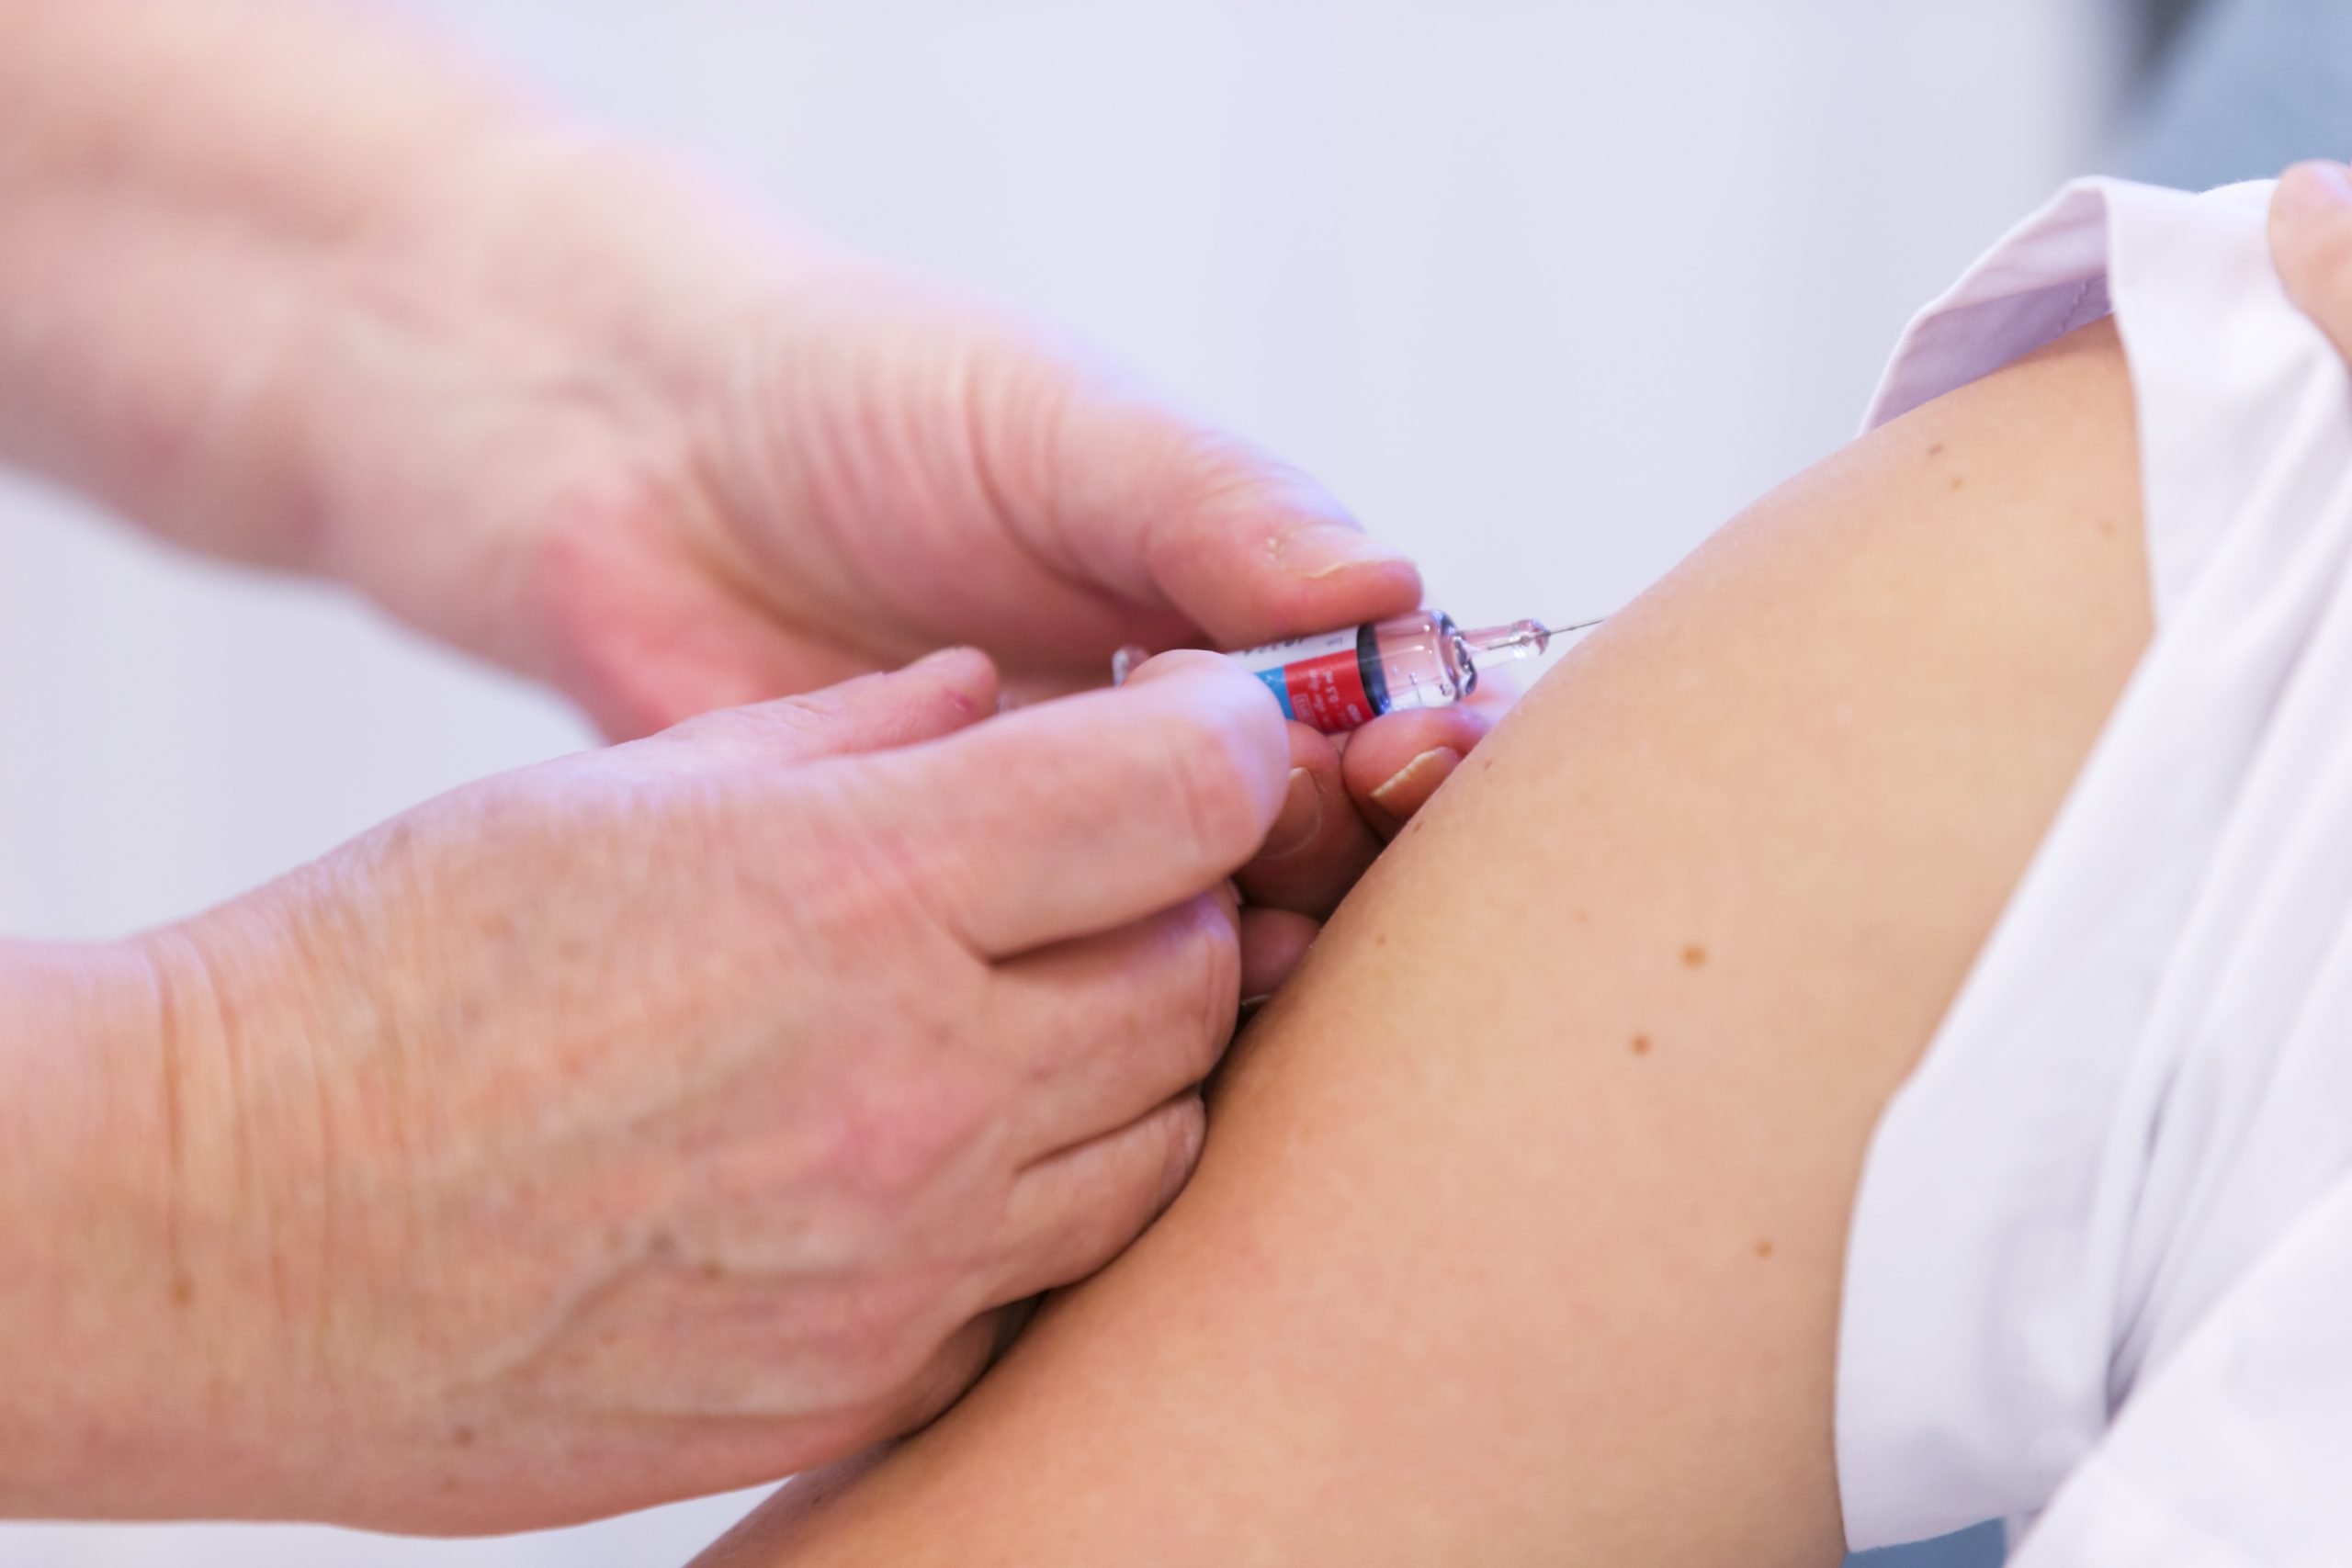 Cet automne, les jeunes femmes se verront offrir le vaccin gratuit contre le VPH - 3